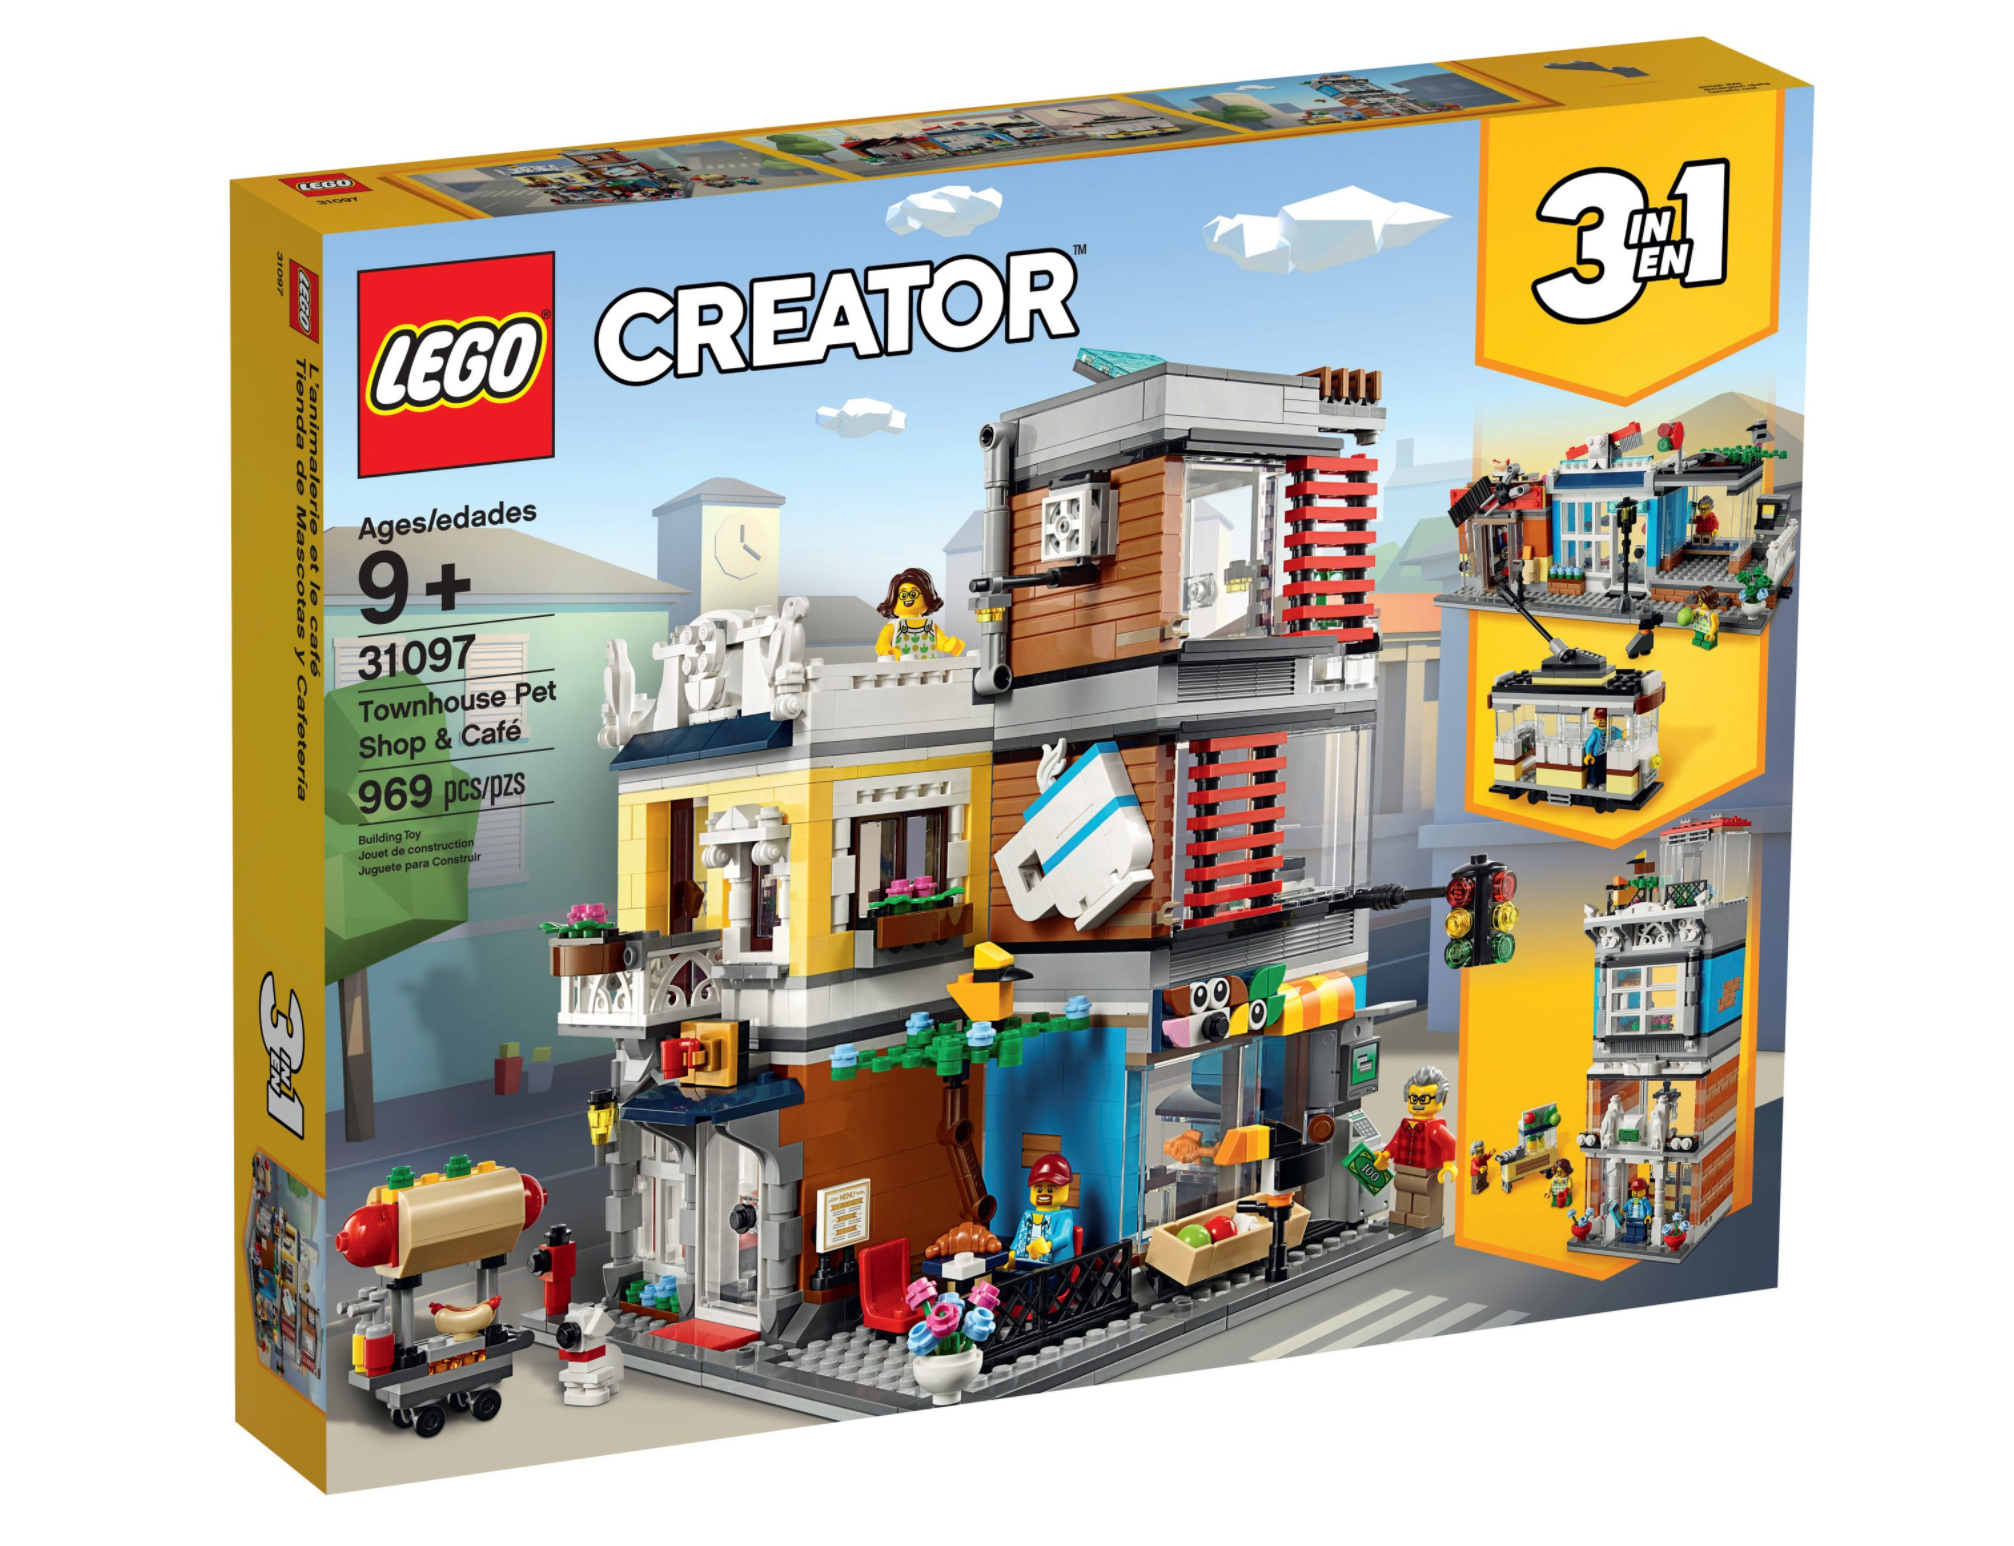 LEGO: Creator - Townhouse Pet Shop & Café